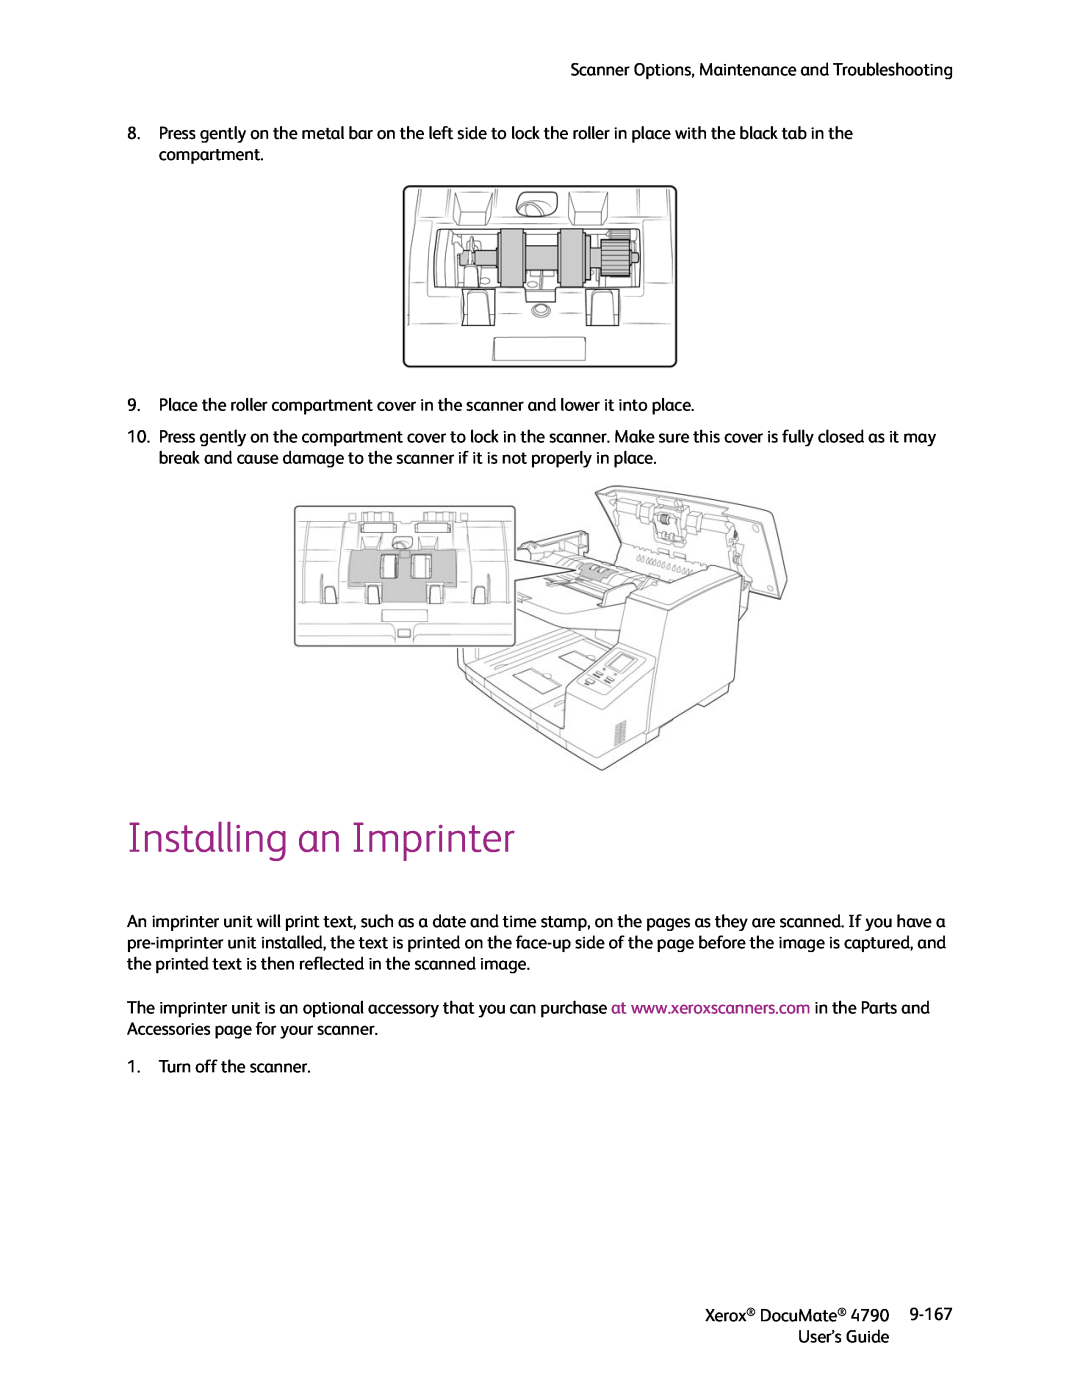 Xerox xerox documate manual Installing an Imprinter 